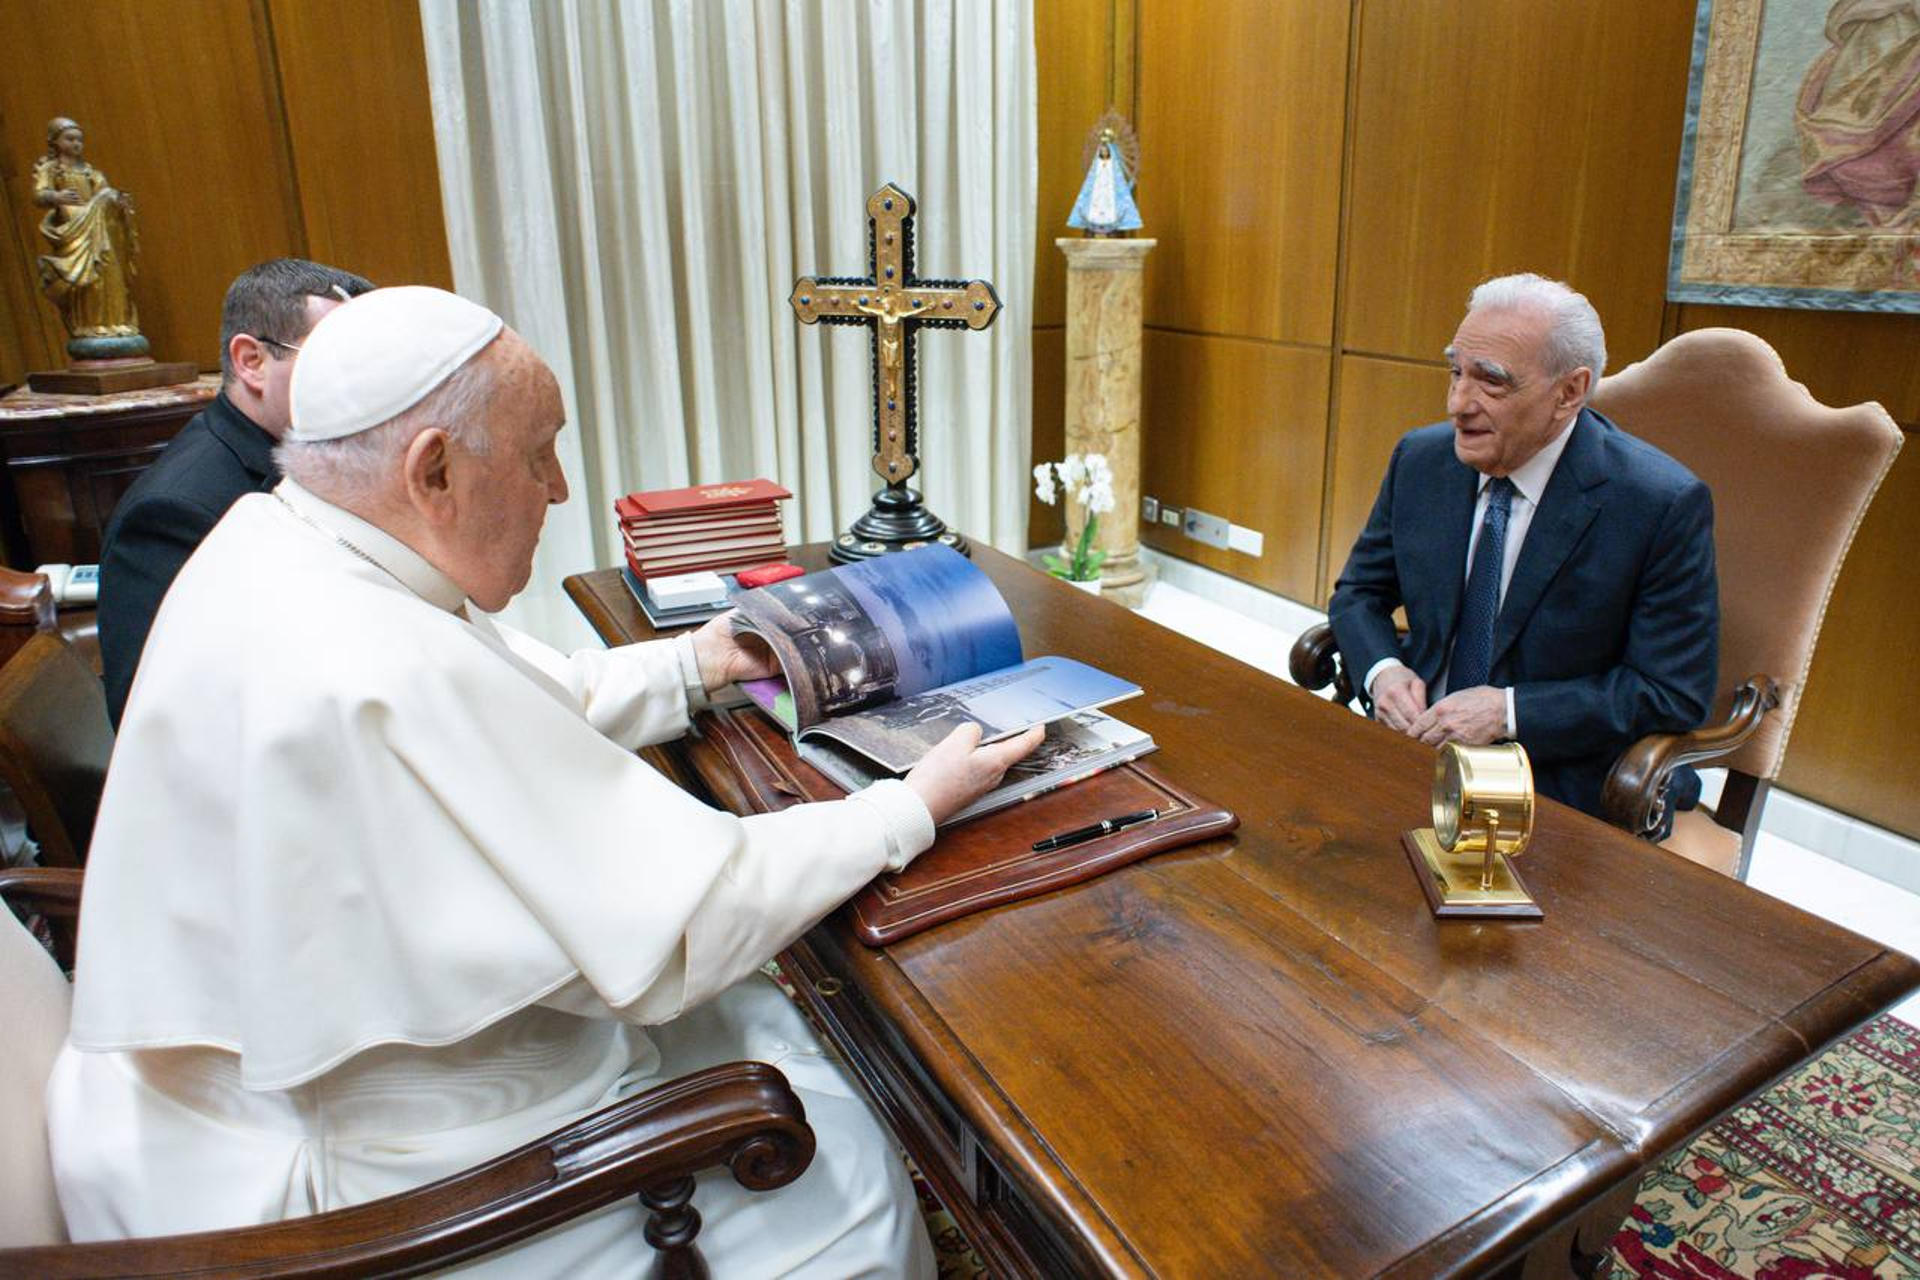 Imagen facilitada por el Vaticano que muestra al papa Francisco durante la breve reunión mantenida con el director de cine estadounidense Martin Scorsese. EFE/ SOLO USO EDITORIAL/SOLO DISPONIBLE PARA ILUSTRAR LA NOTICIA QUE ACOMPAÑA (CRÉDITO OBLIGATORIO)
